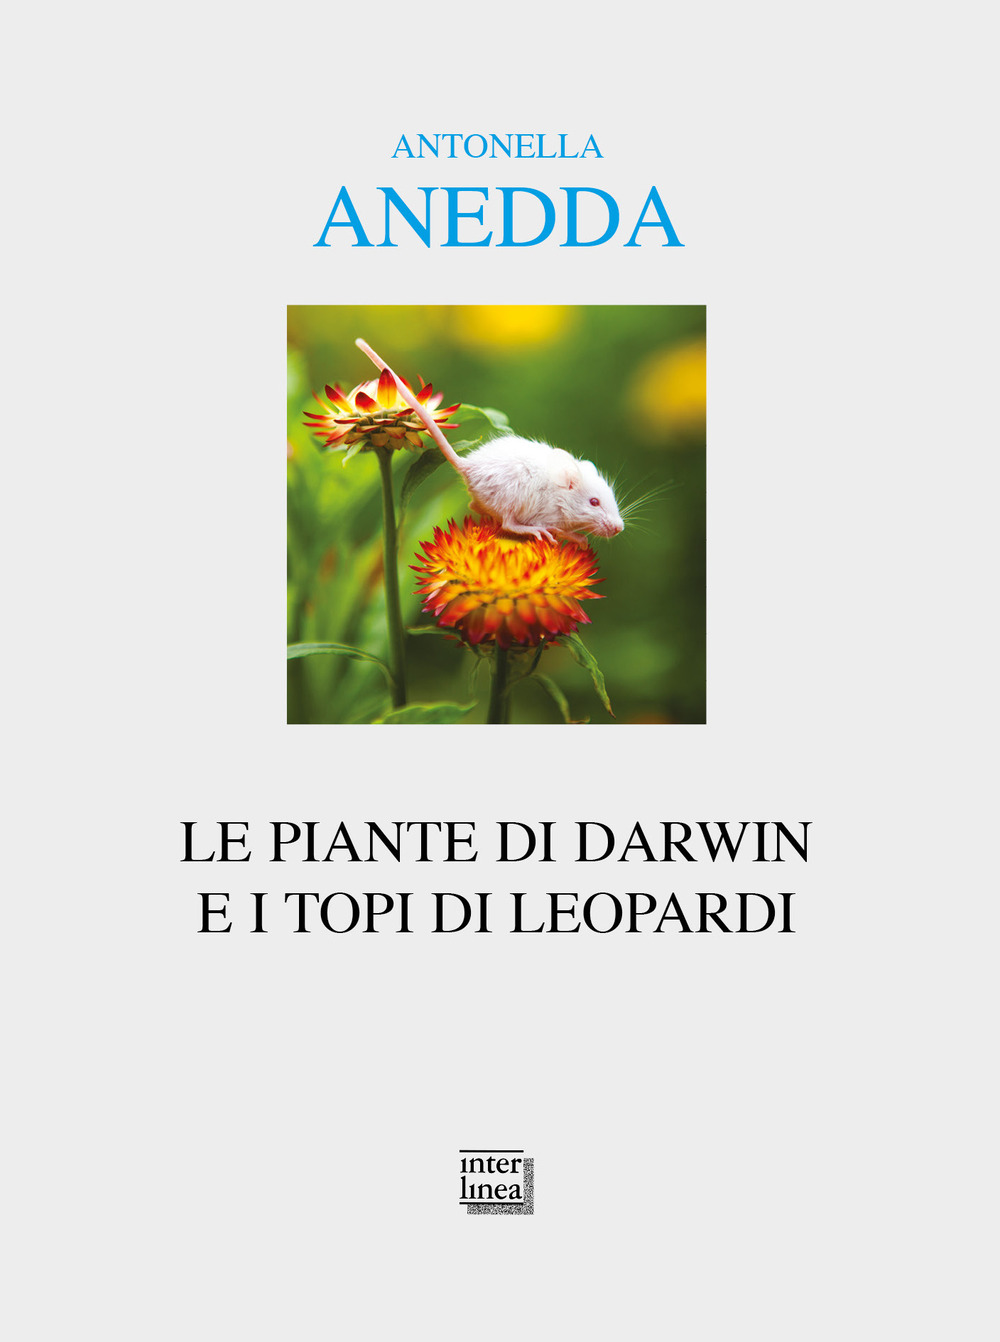 Libri Antonella Anedda - Le Piante Di Darwin E I Topi Di Leopardi NUOVO SIGILLATO, EDIZIONE DEL 31/03/2022 SUBITO DISPONIBILE